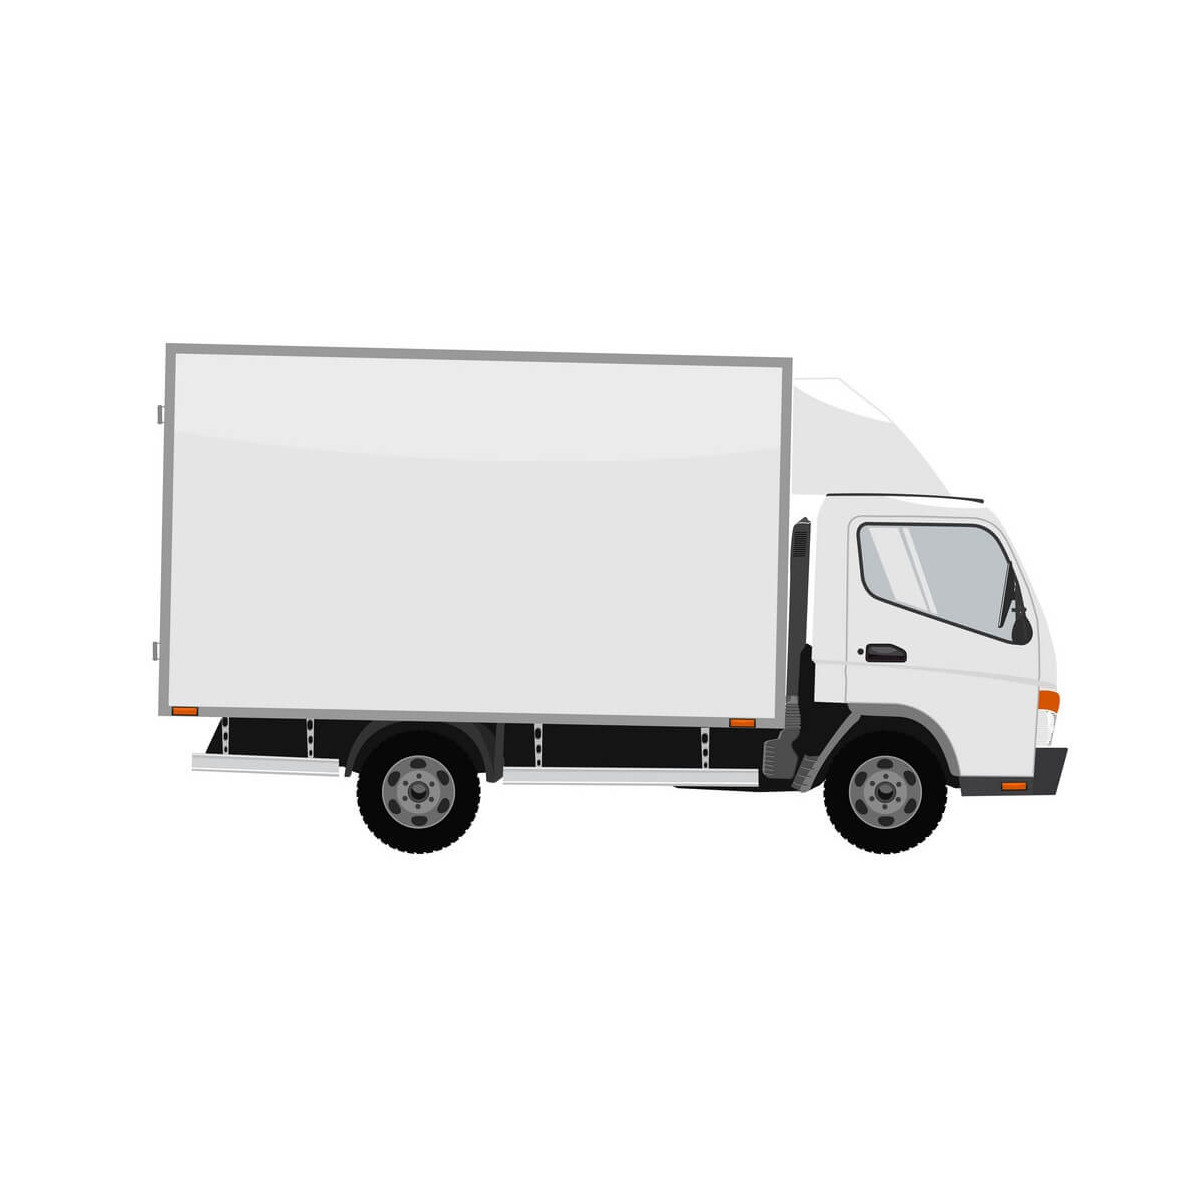 Livraison petit porteur si accès camion 38 tonnes impossible - MyPiscine